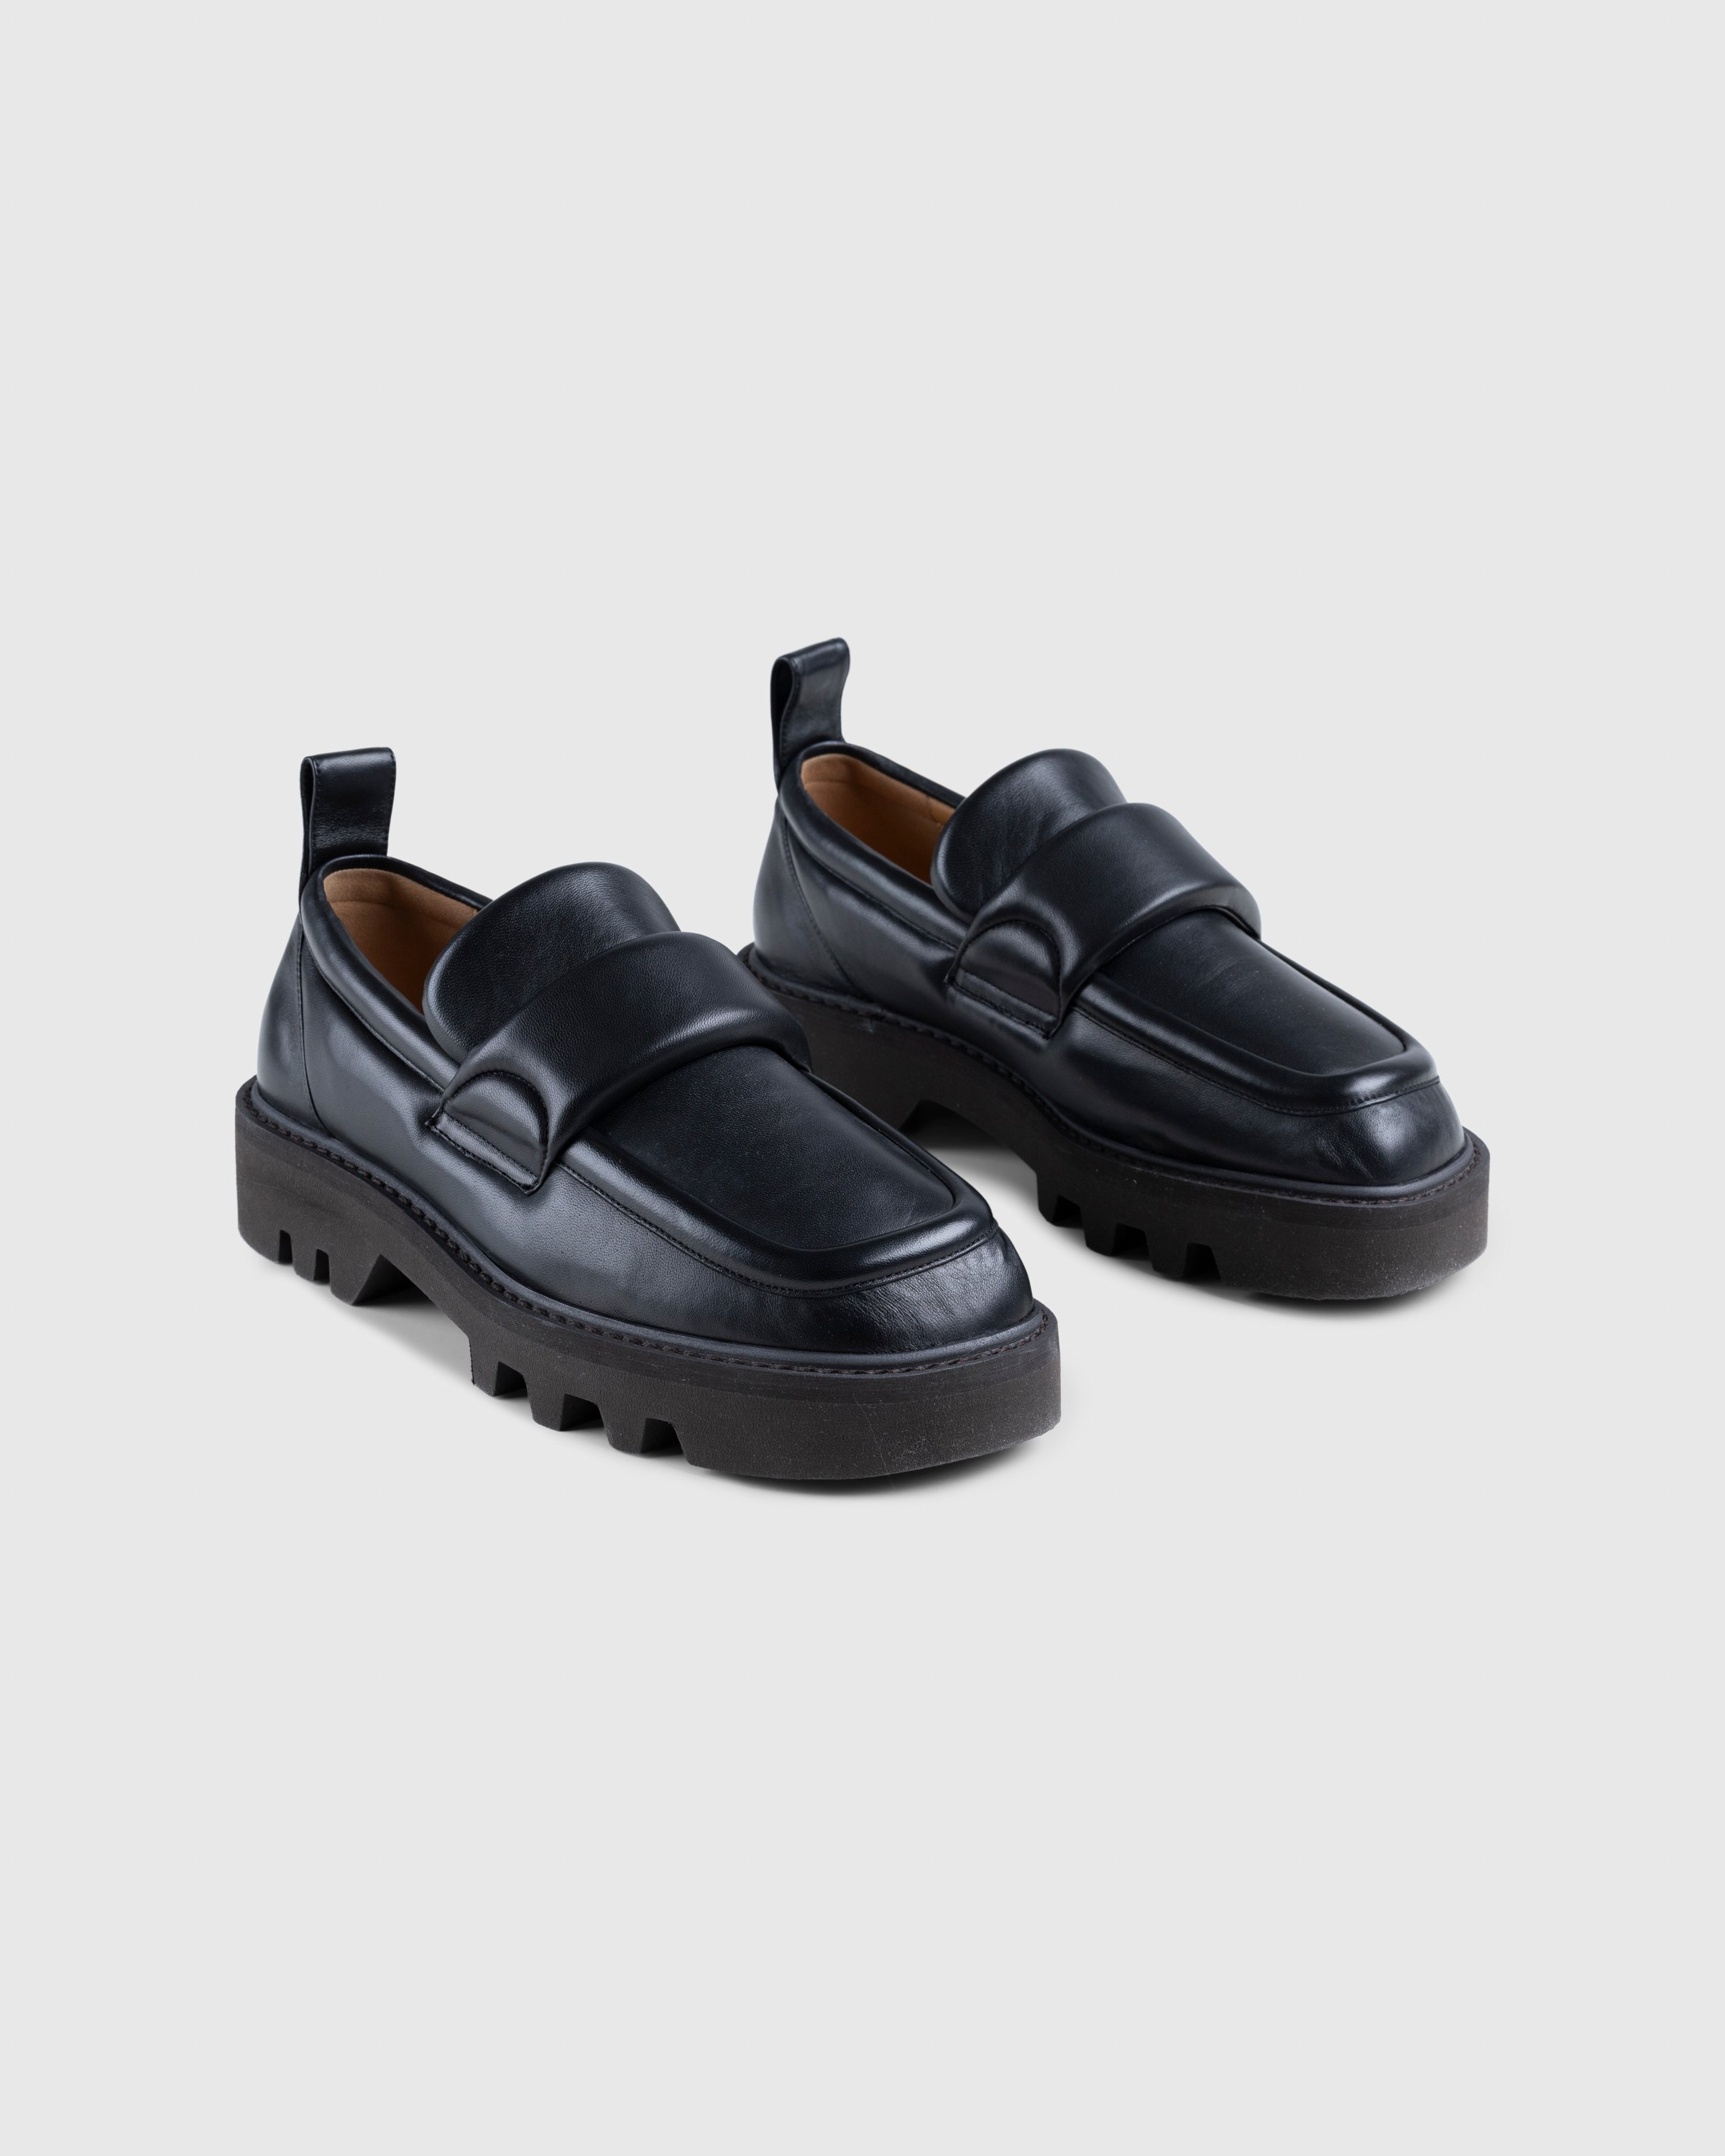 Dries van Noten - Padded Leather Loafers Black - Footwear - Black - Image 3